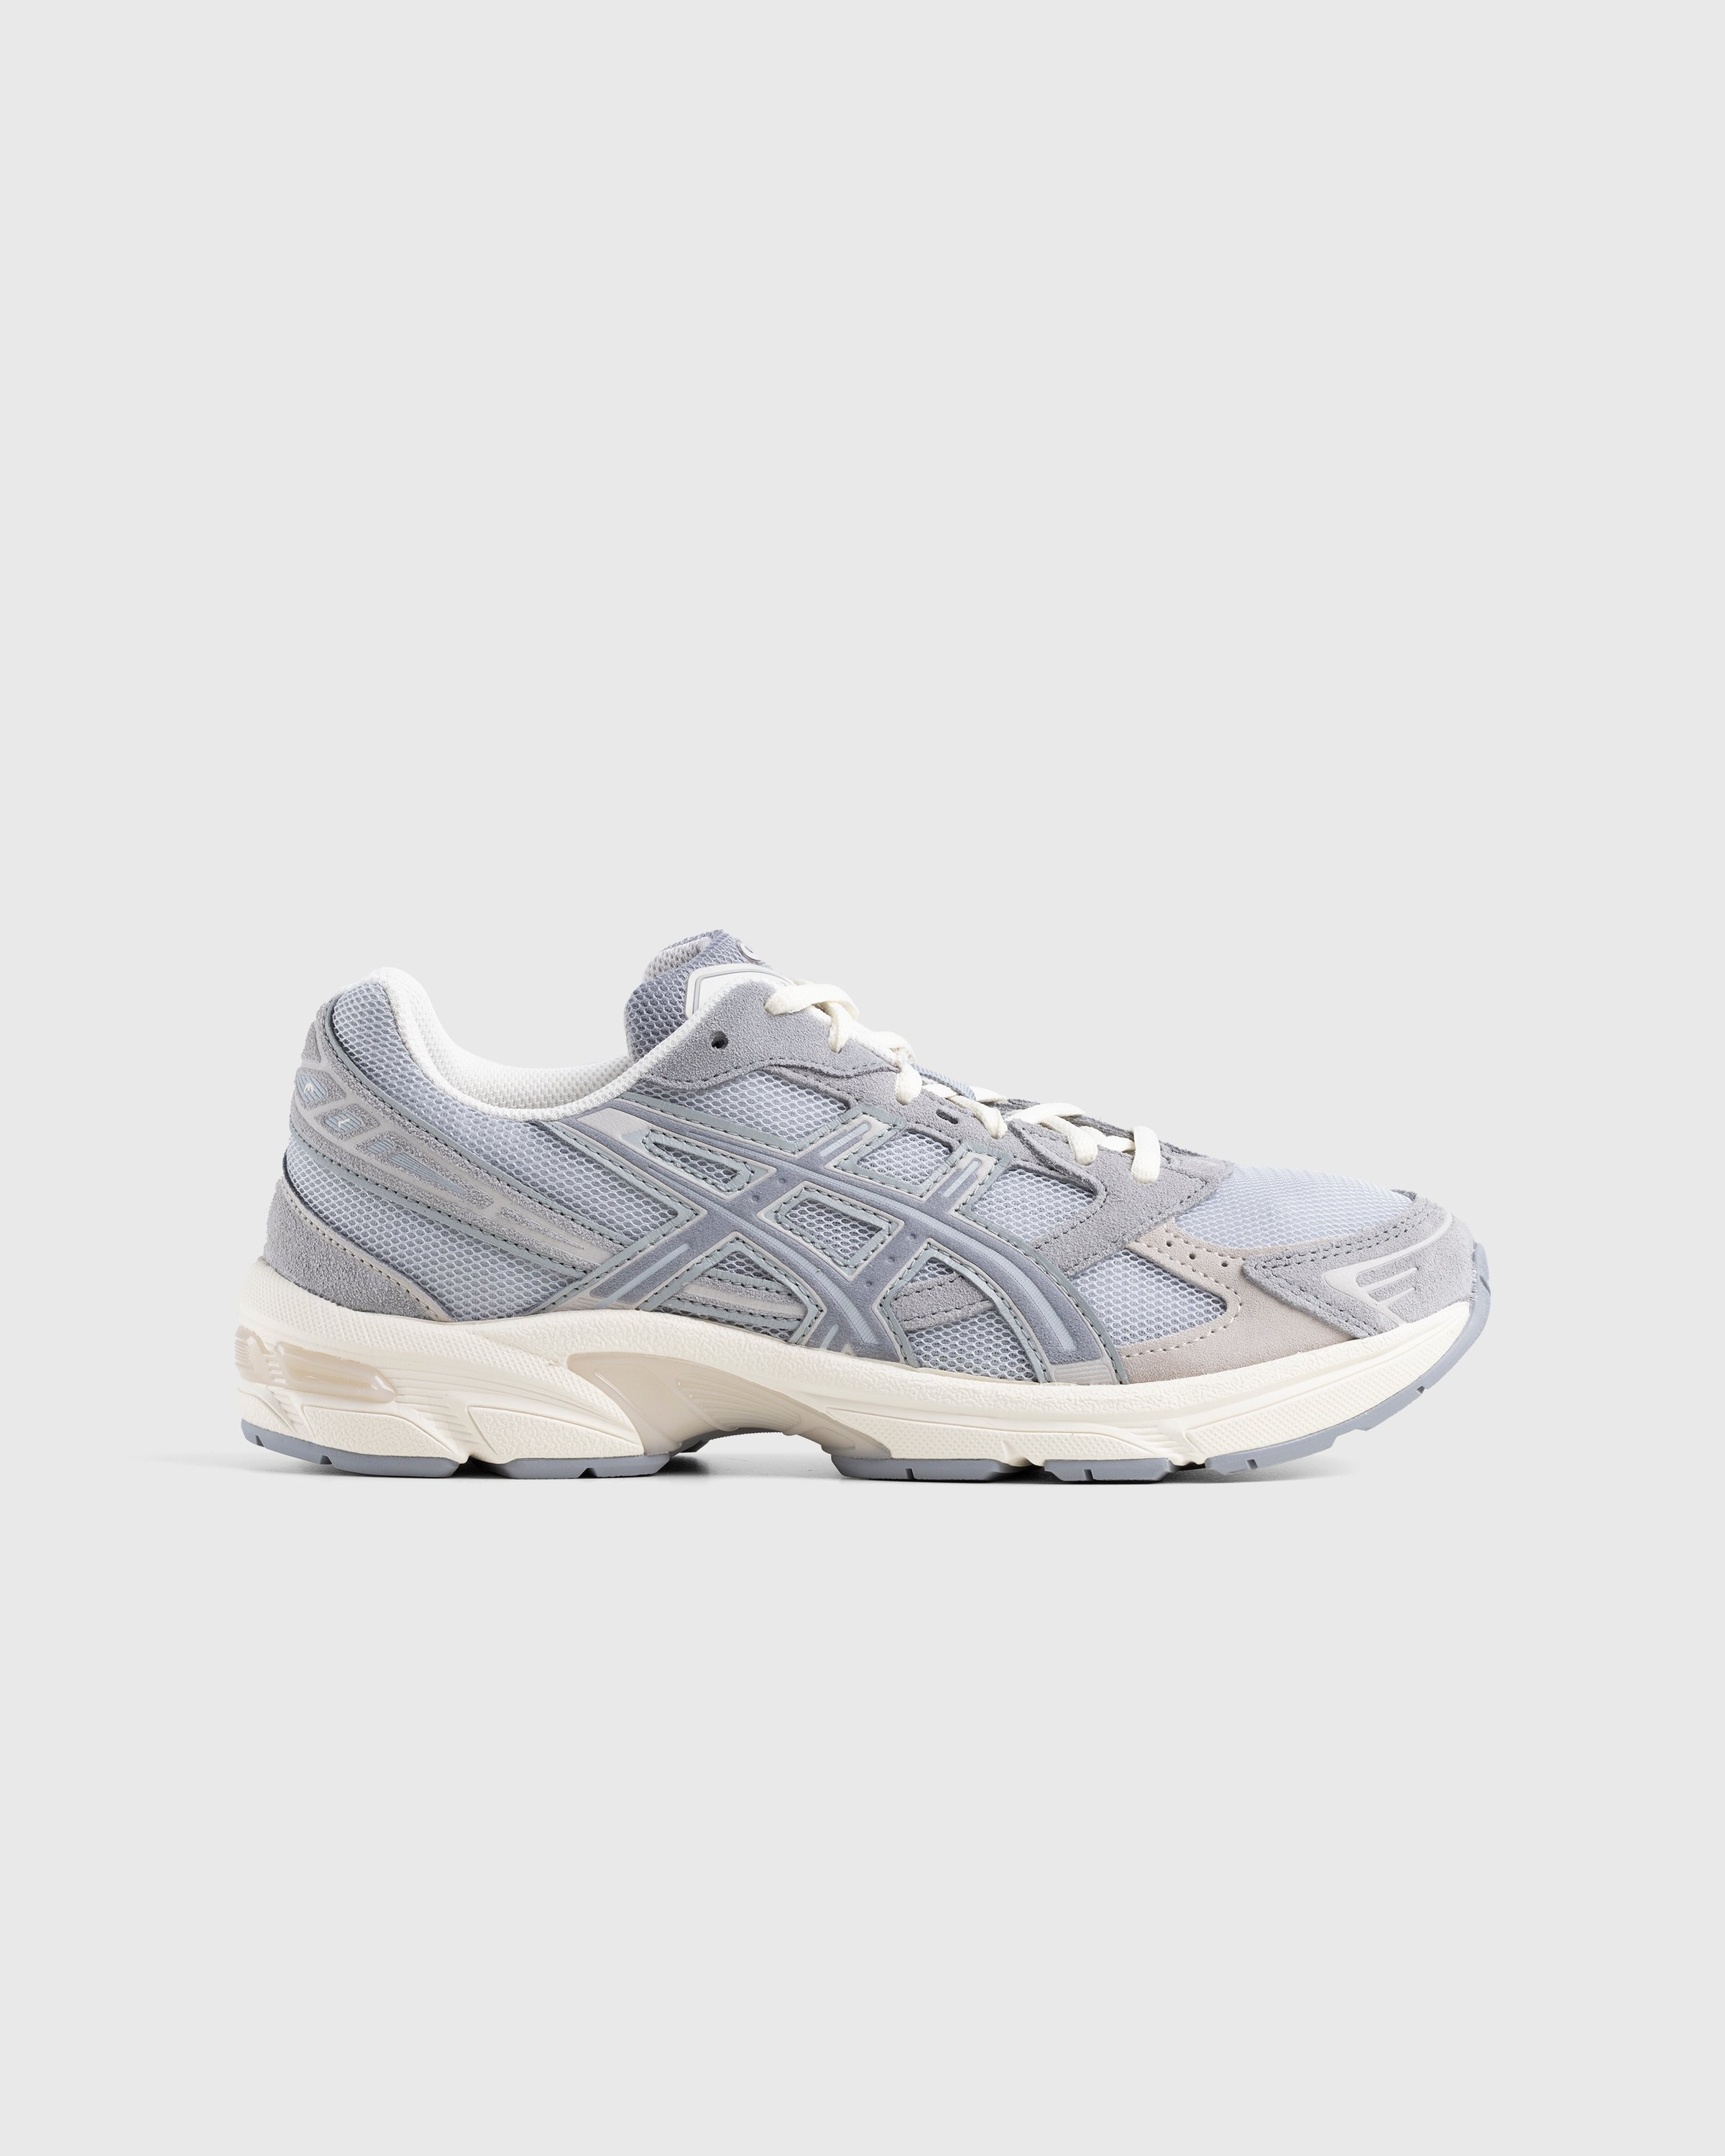 asics – Gel-1130 Piedmont Grey/Sheet Rock - Low Top Sneakers - Grey - Image 1